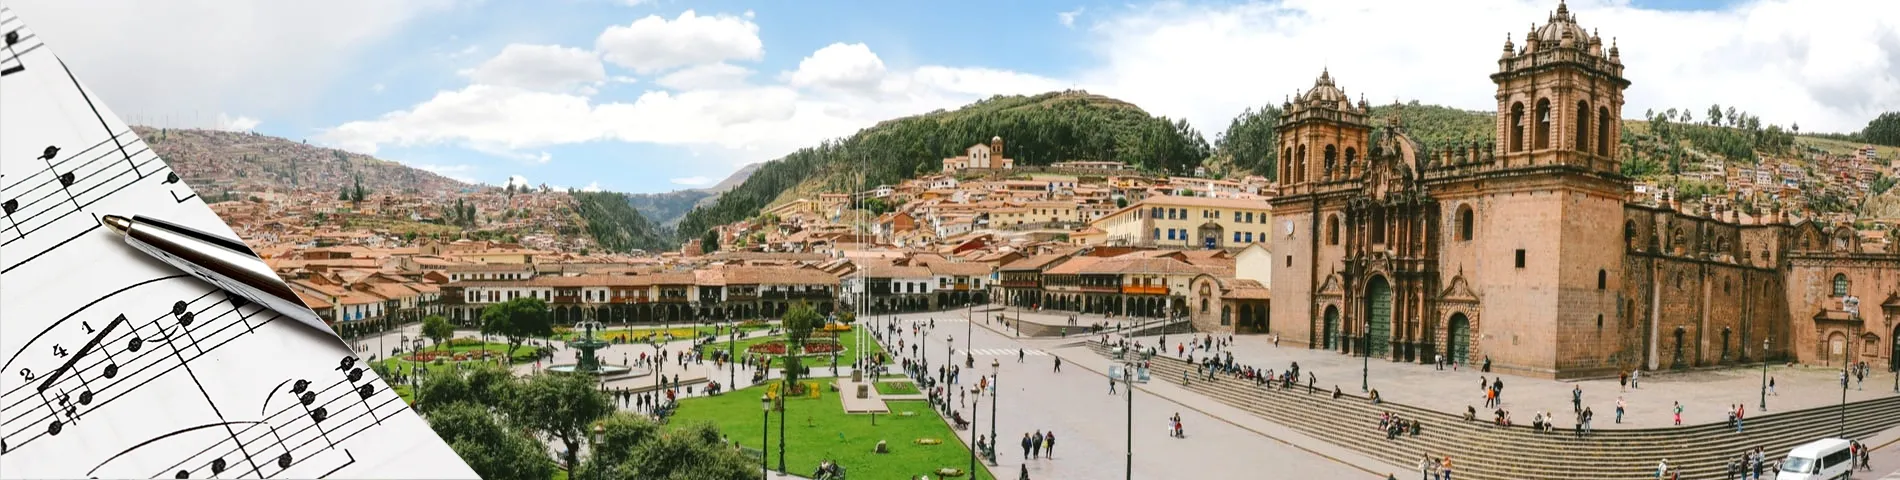 Cuzco - Hiszpański & Muzyka